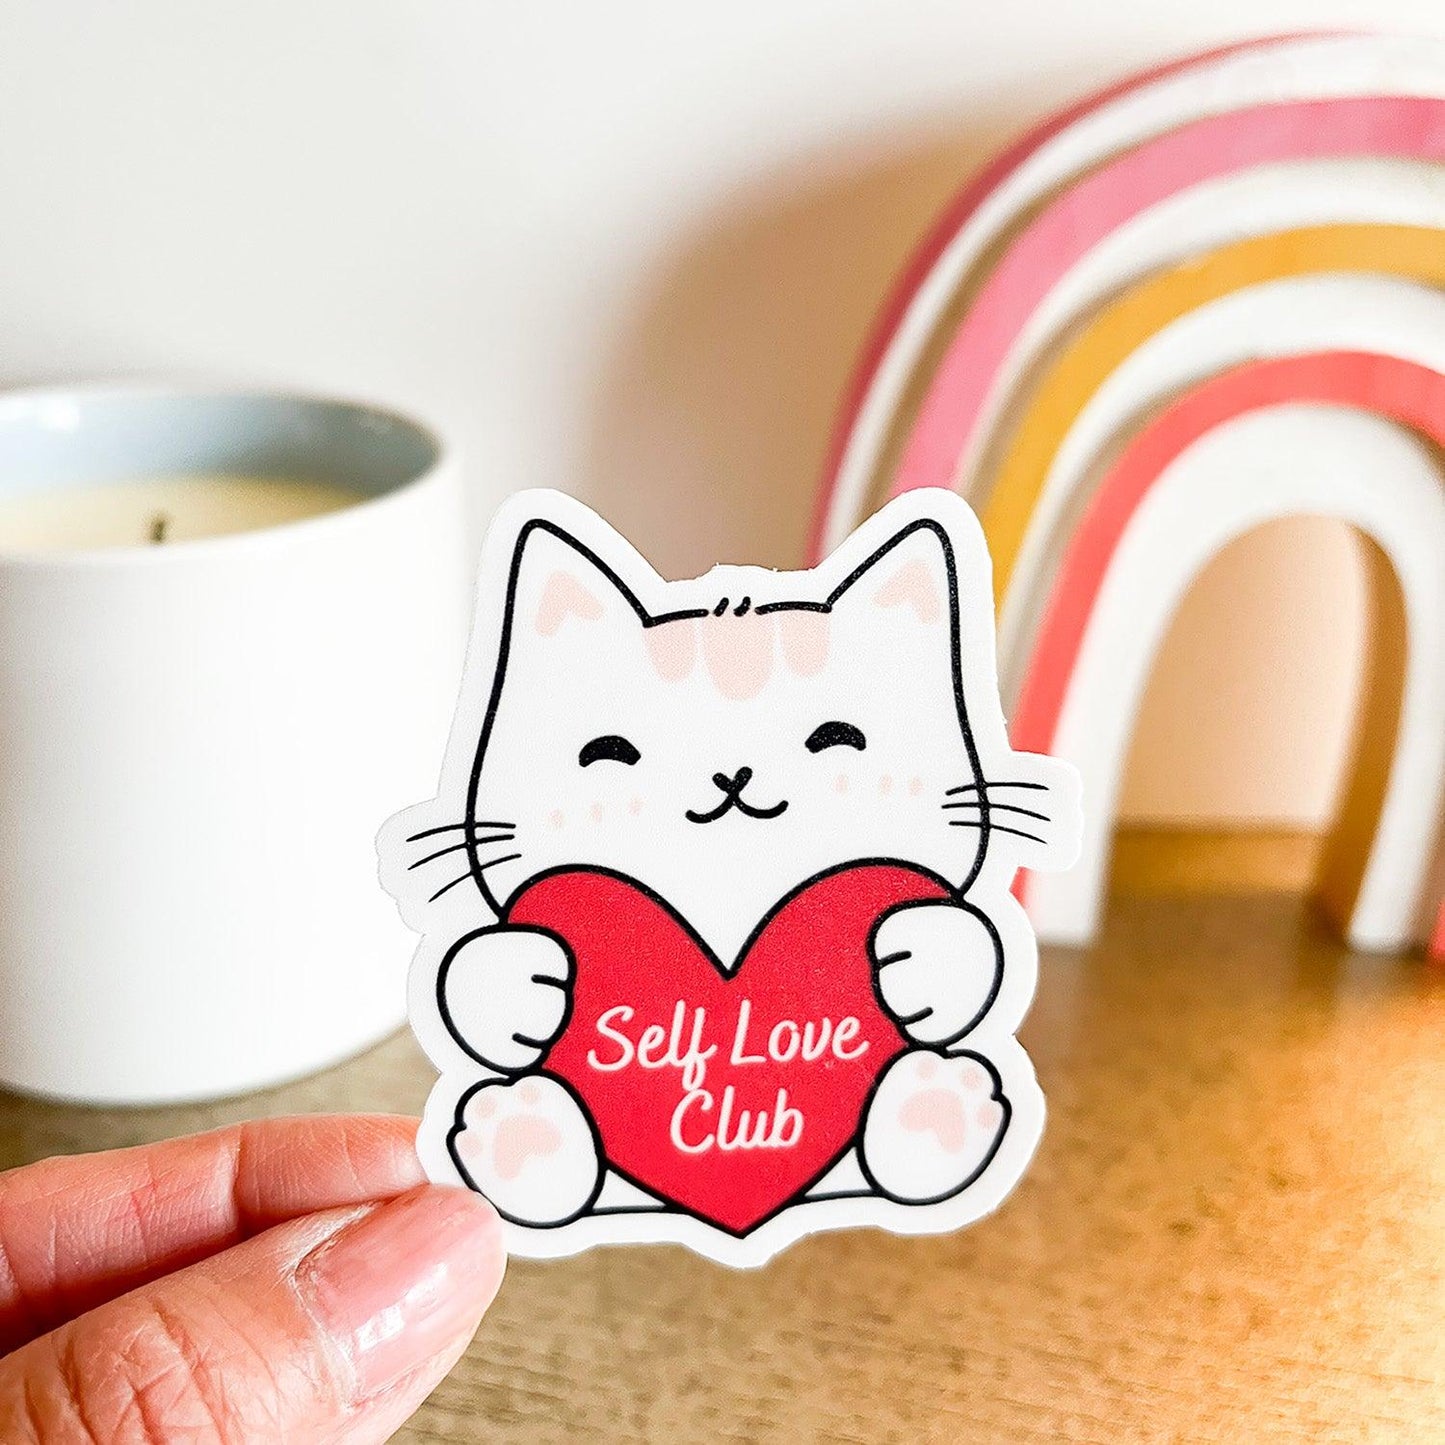 Self Love Club cat sticker in hand